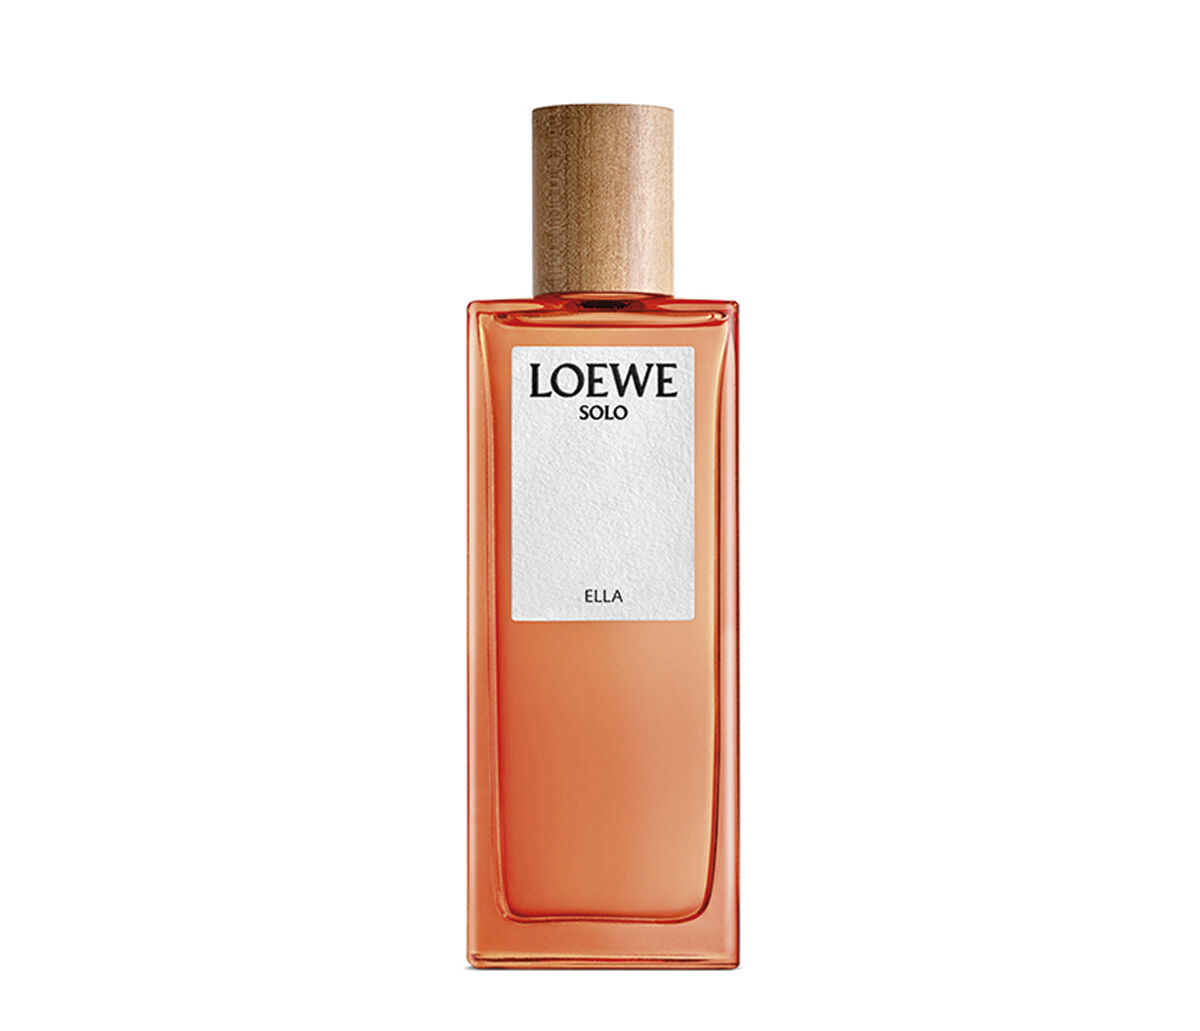 LOEWE Perfumes - Official Online Store